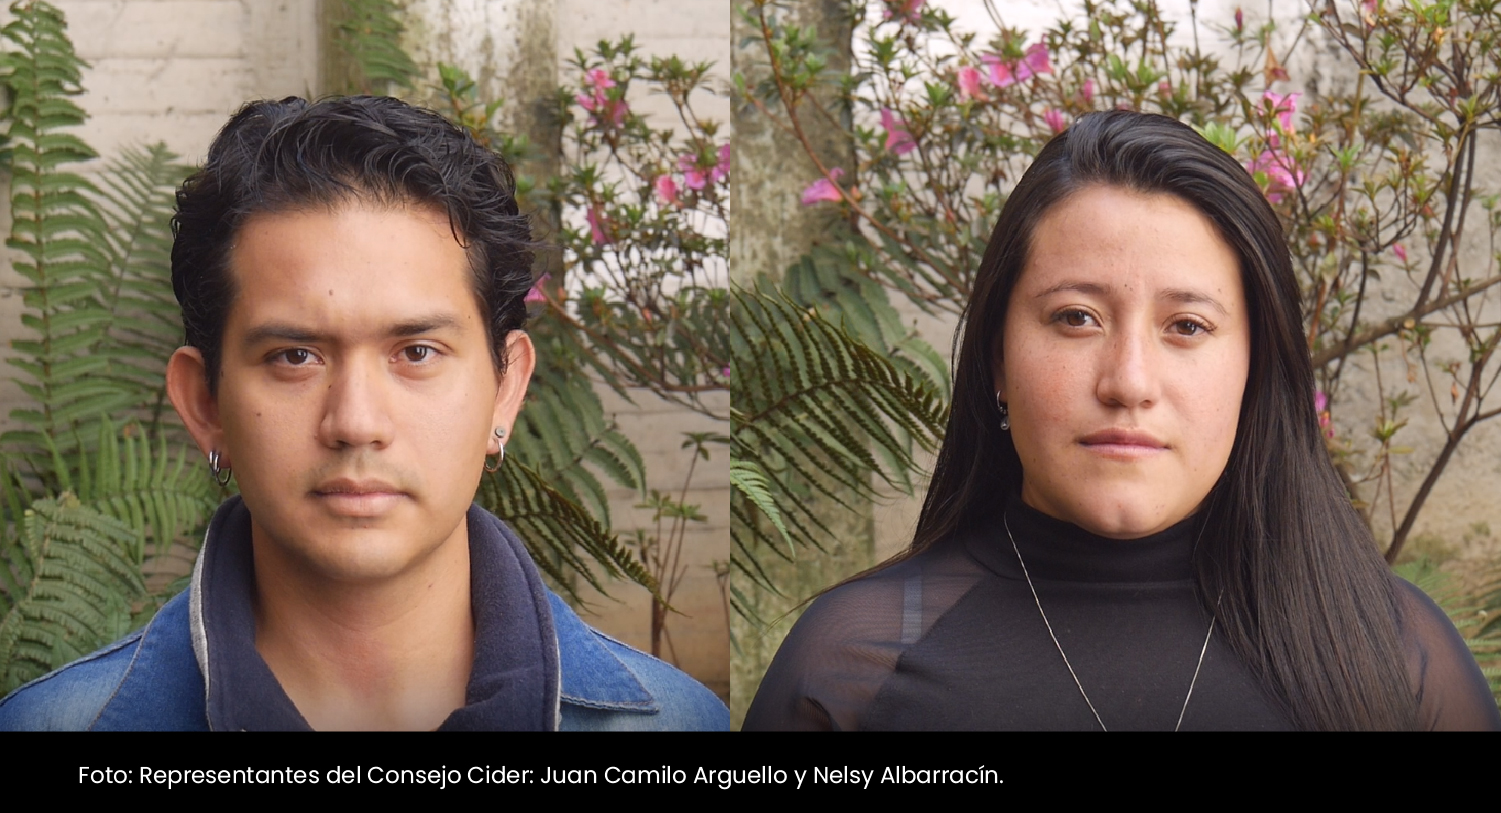 Juan Camilo Arguello y Nelsy Albarracín representantes de los y las estudiantes. - Cider | Uniandes 